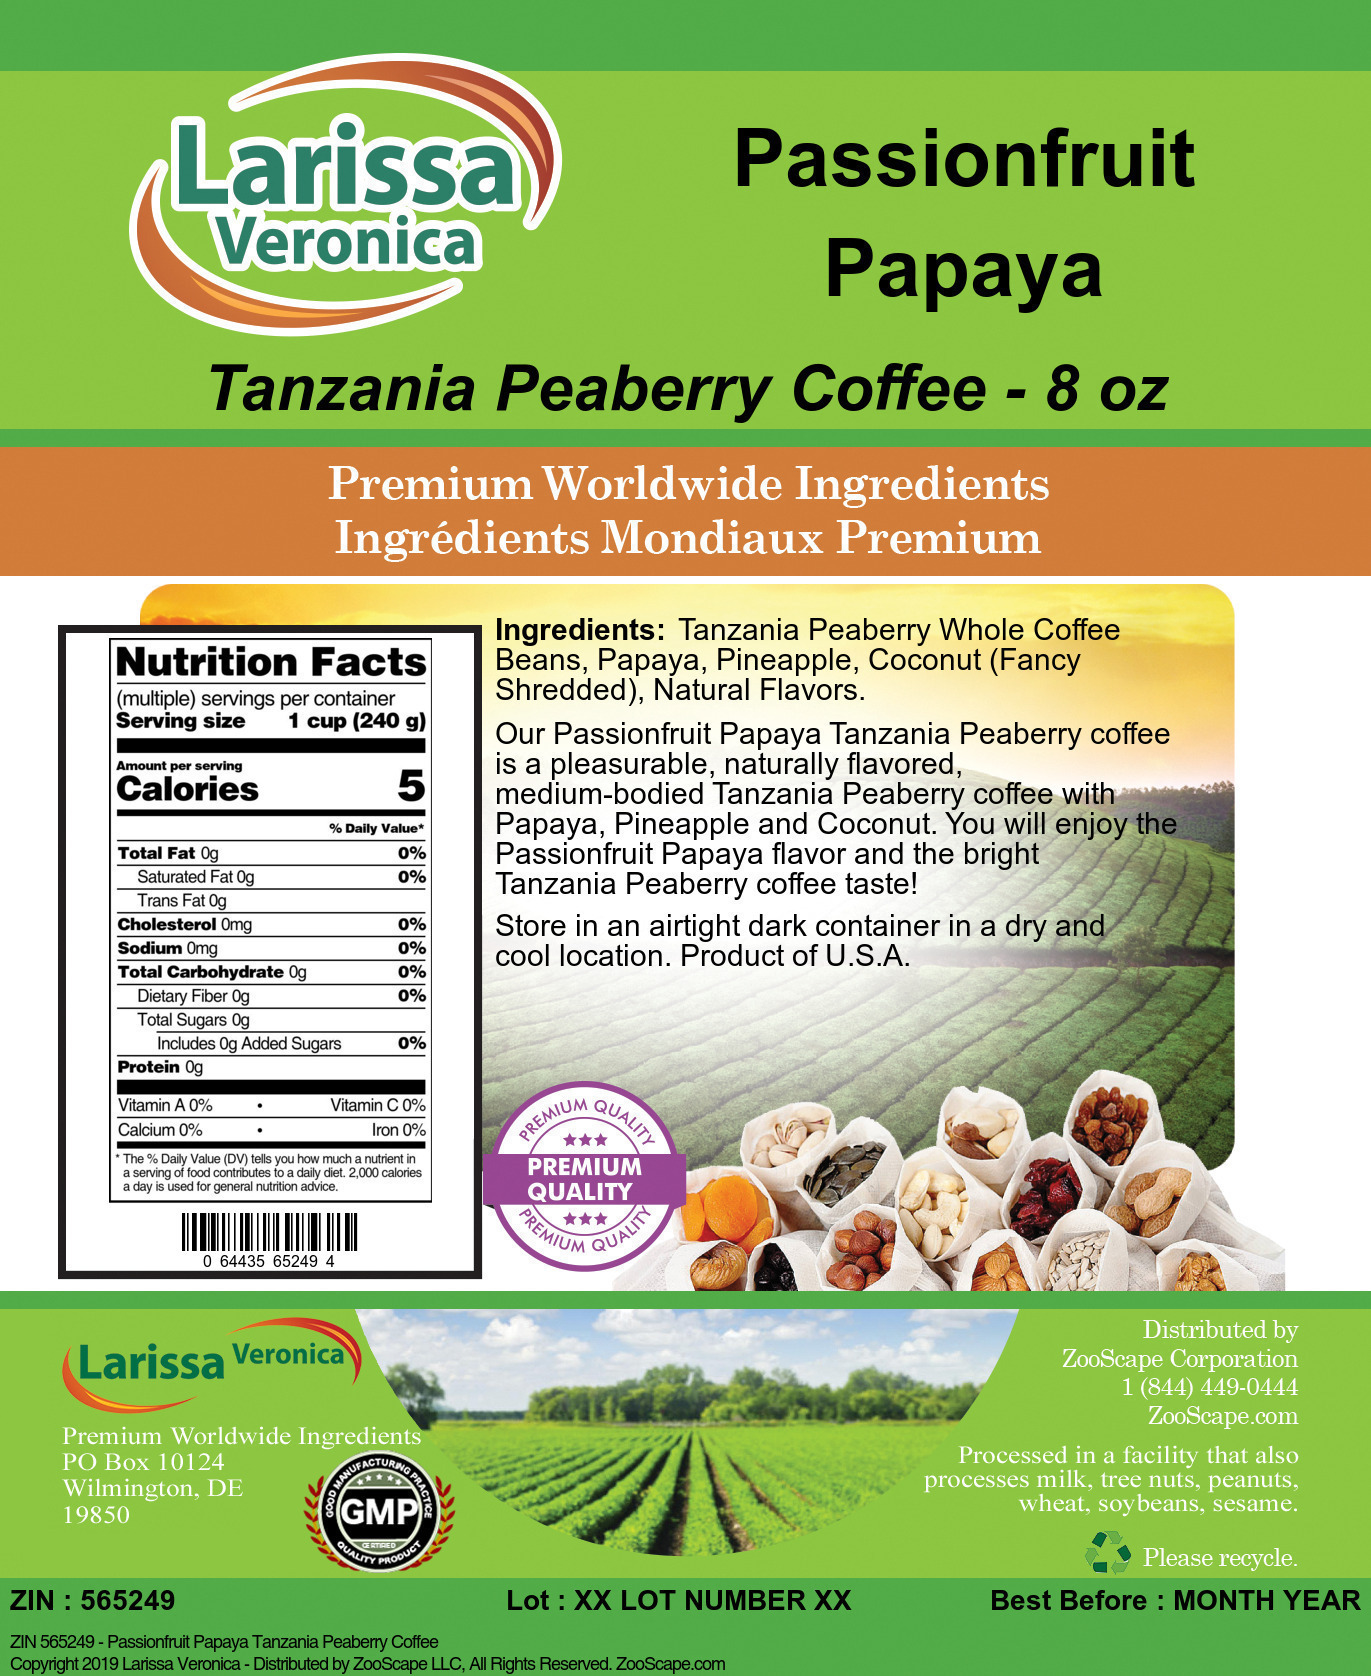 Passionfruit Papaya Tanzania Peaberry Coffee - Label